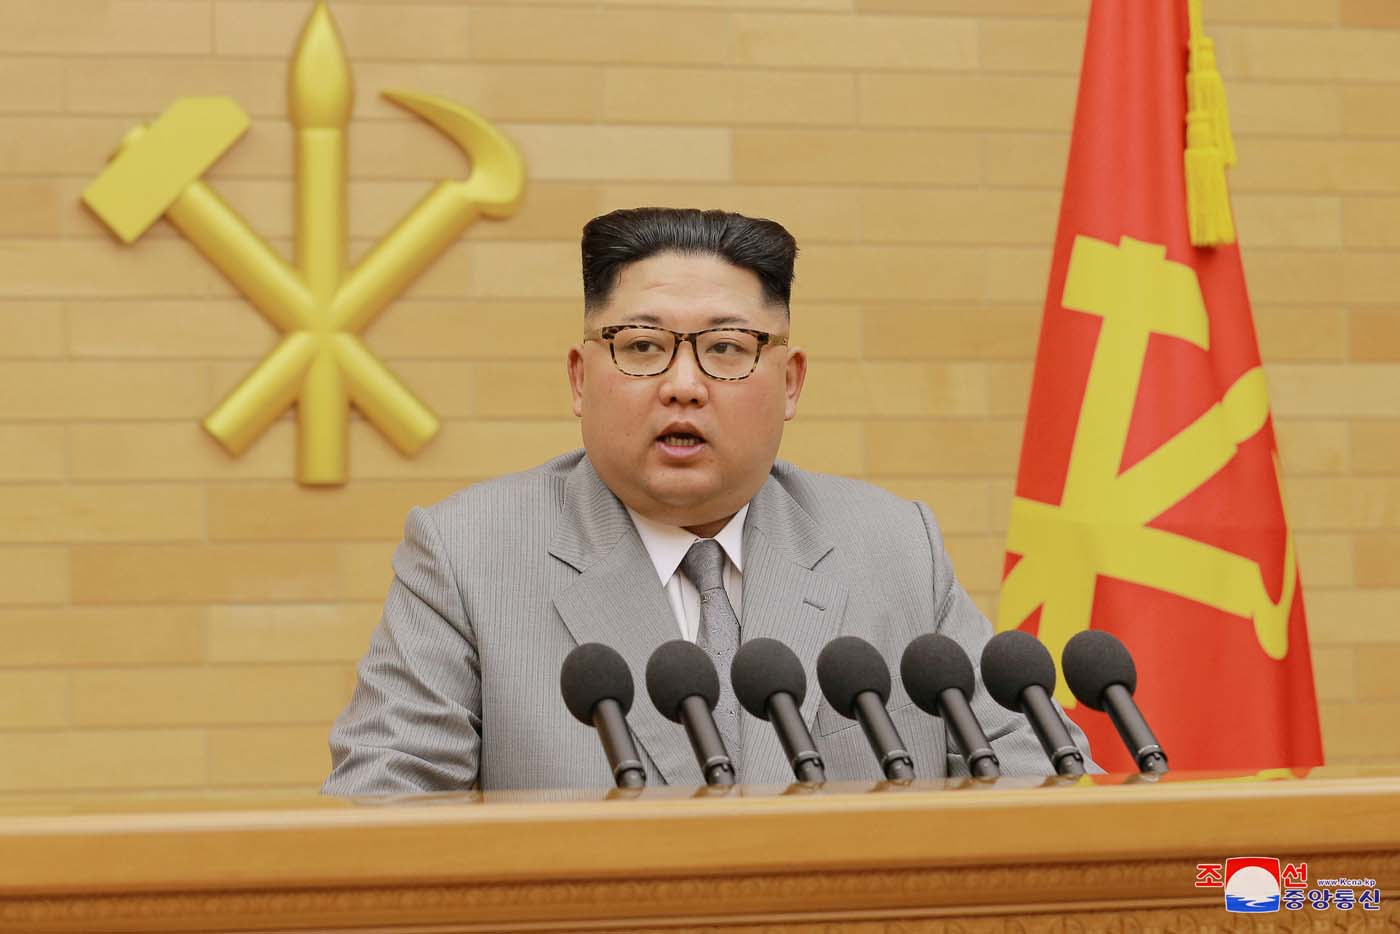 Reaparece hombre de confianza de Kim Jong-un tras rumores de purga